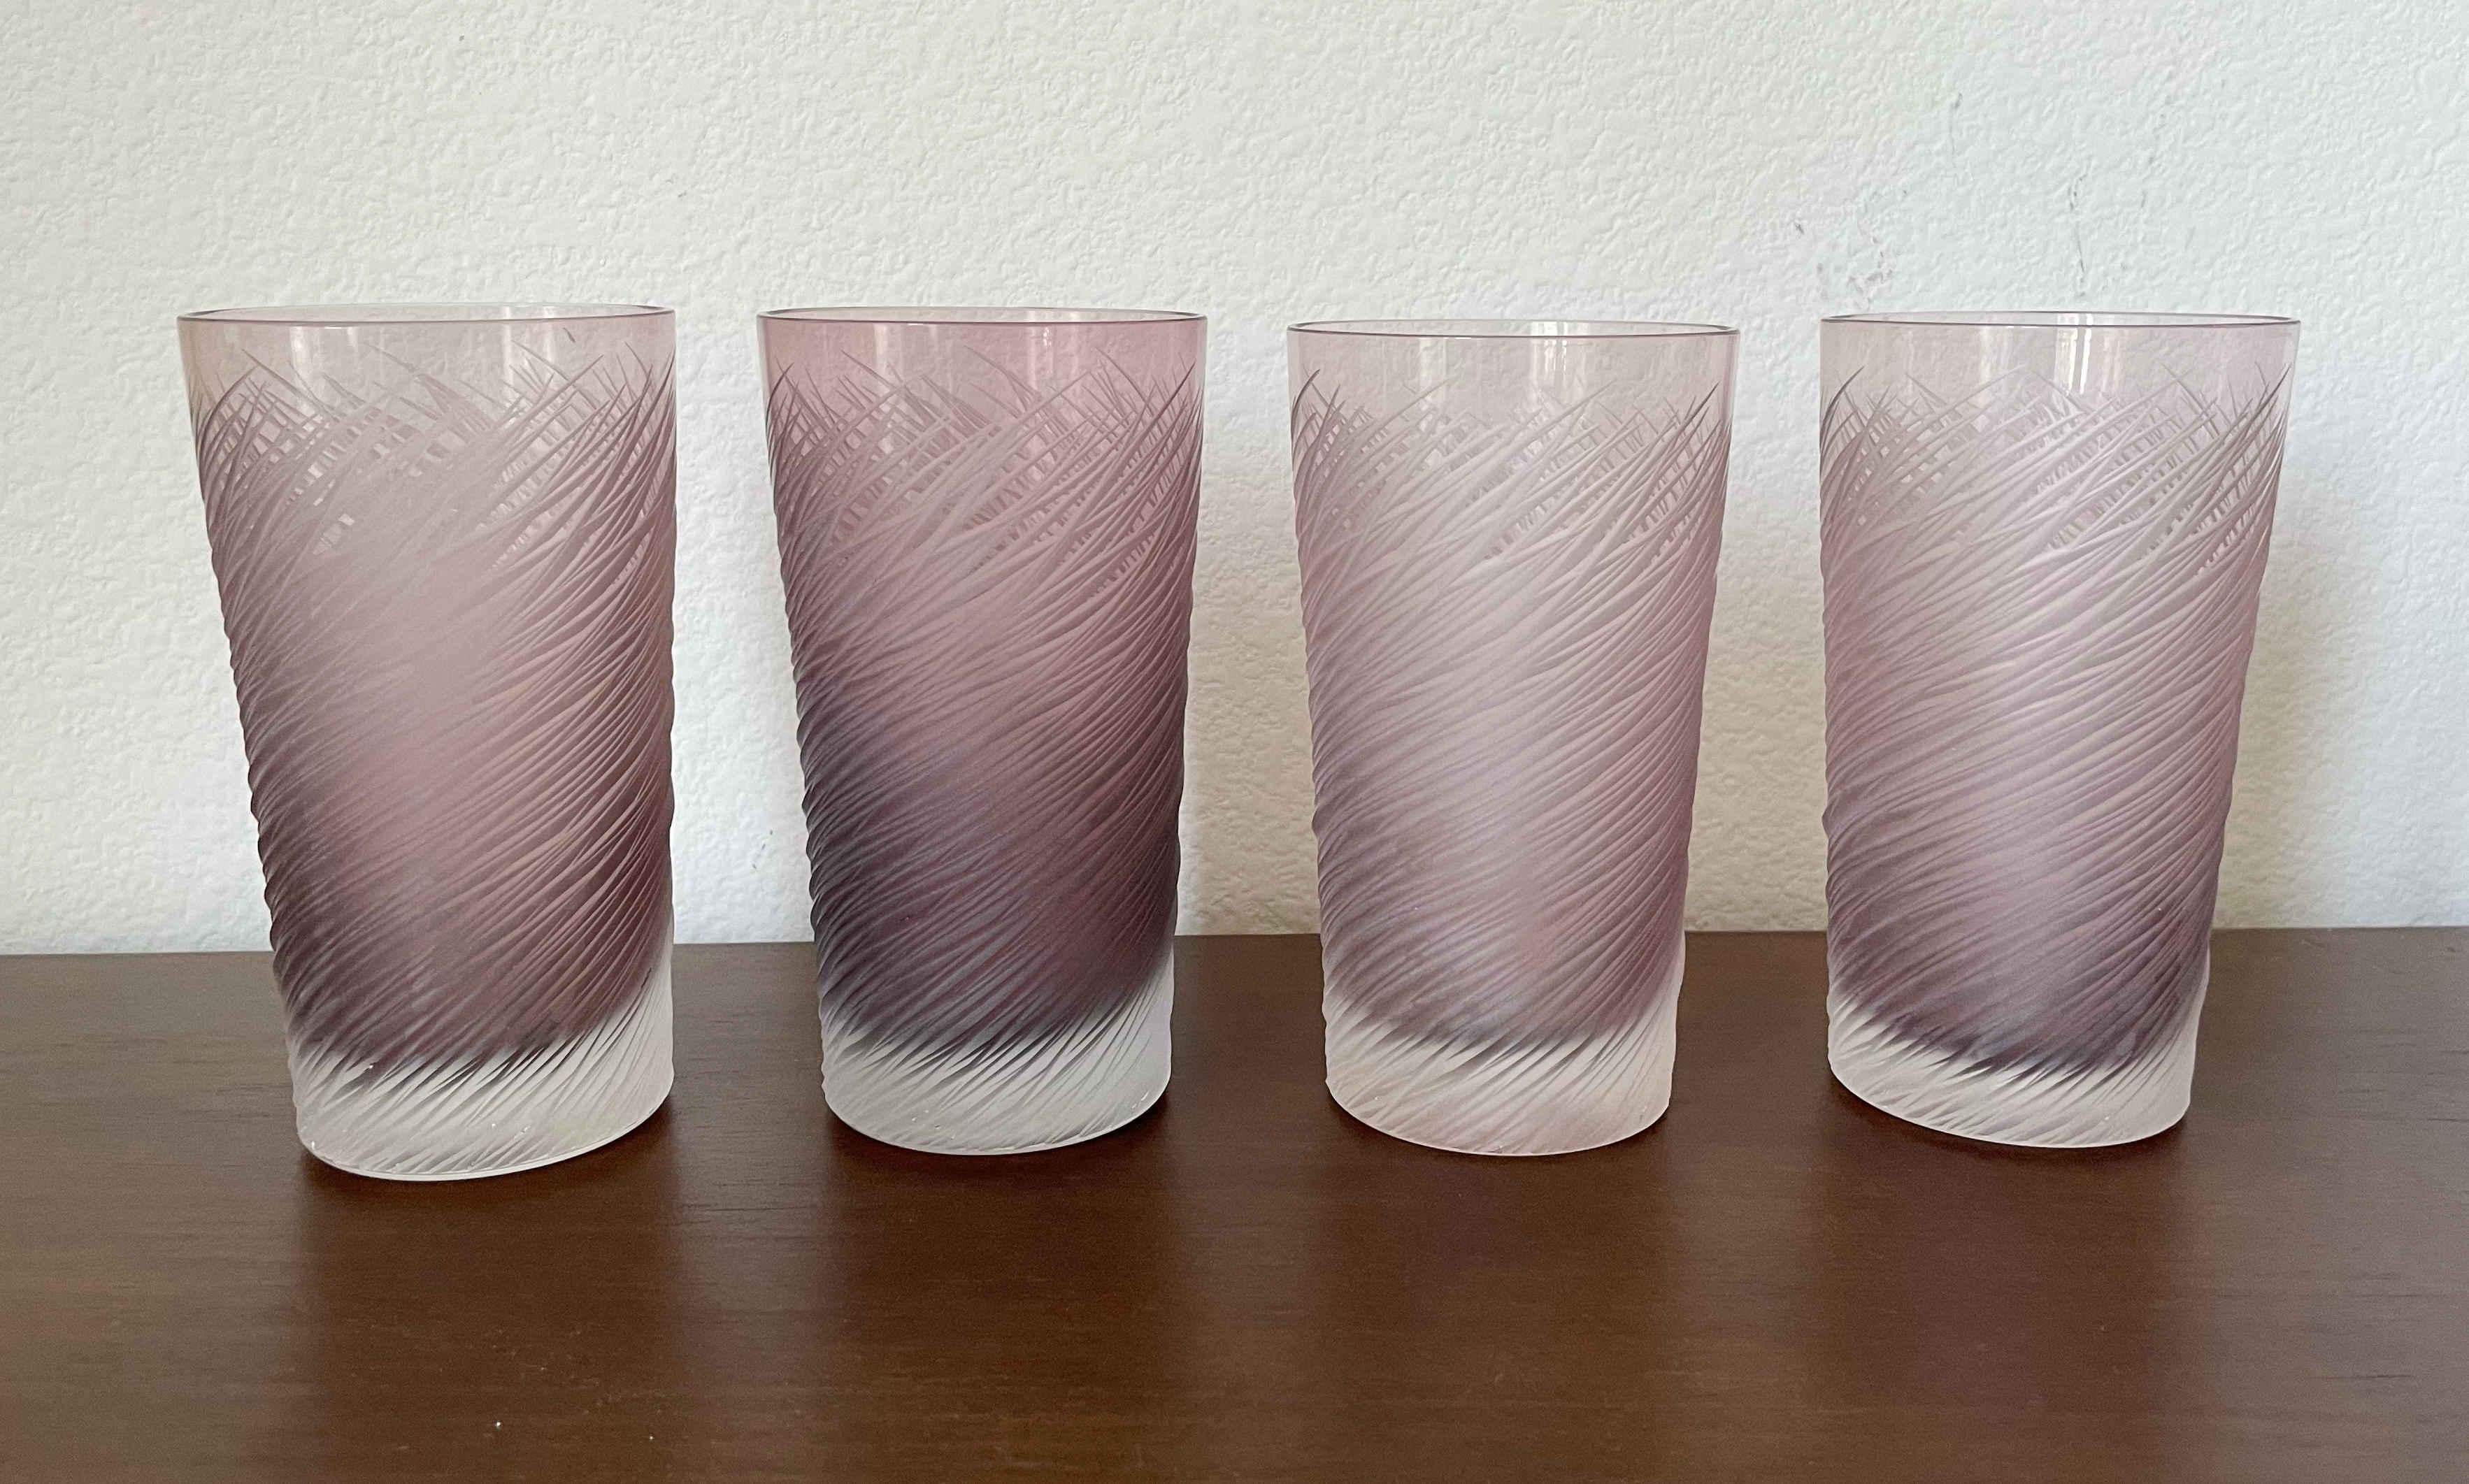 Ensemble de 4 verres de Murano améthyste gravés à la main par Salviati / Fabriqué en Italie dans les années 2000.
Marque originale 